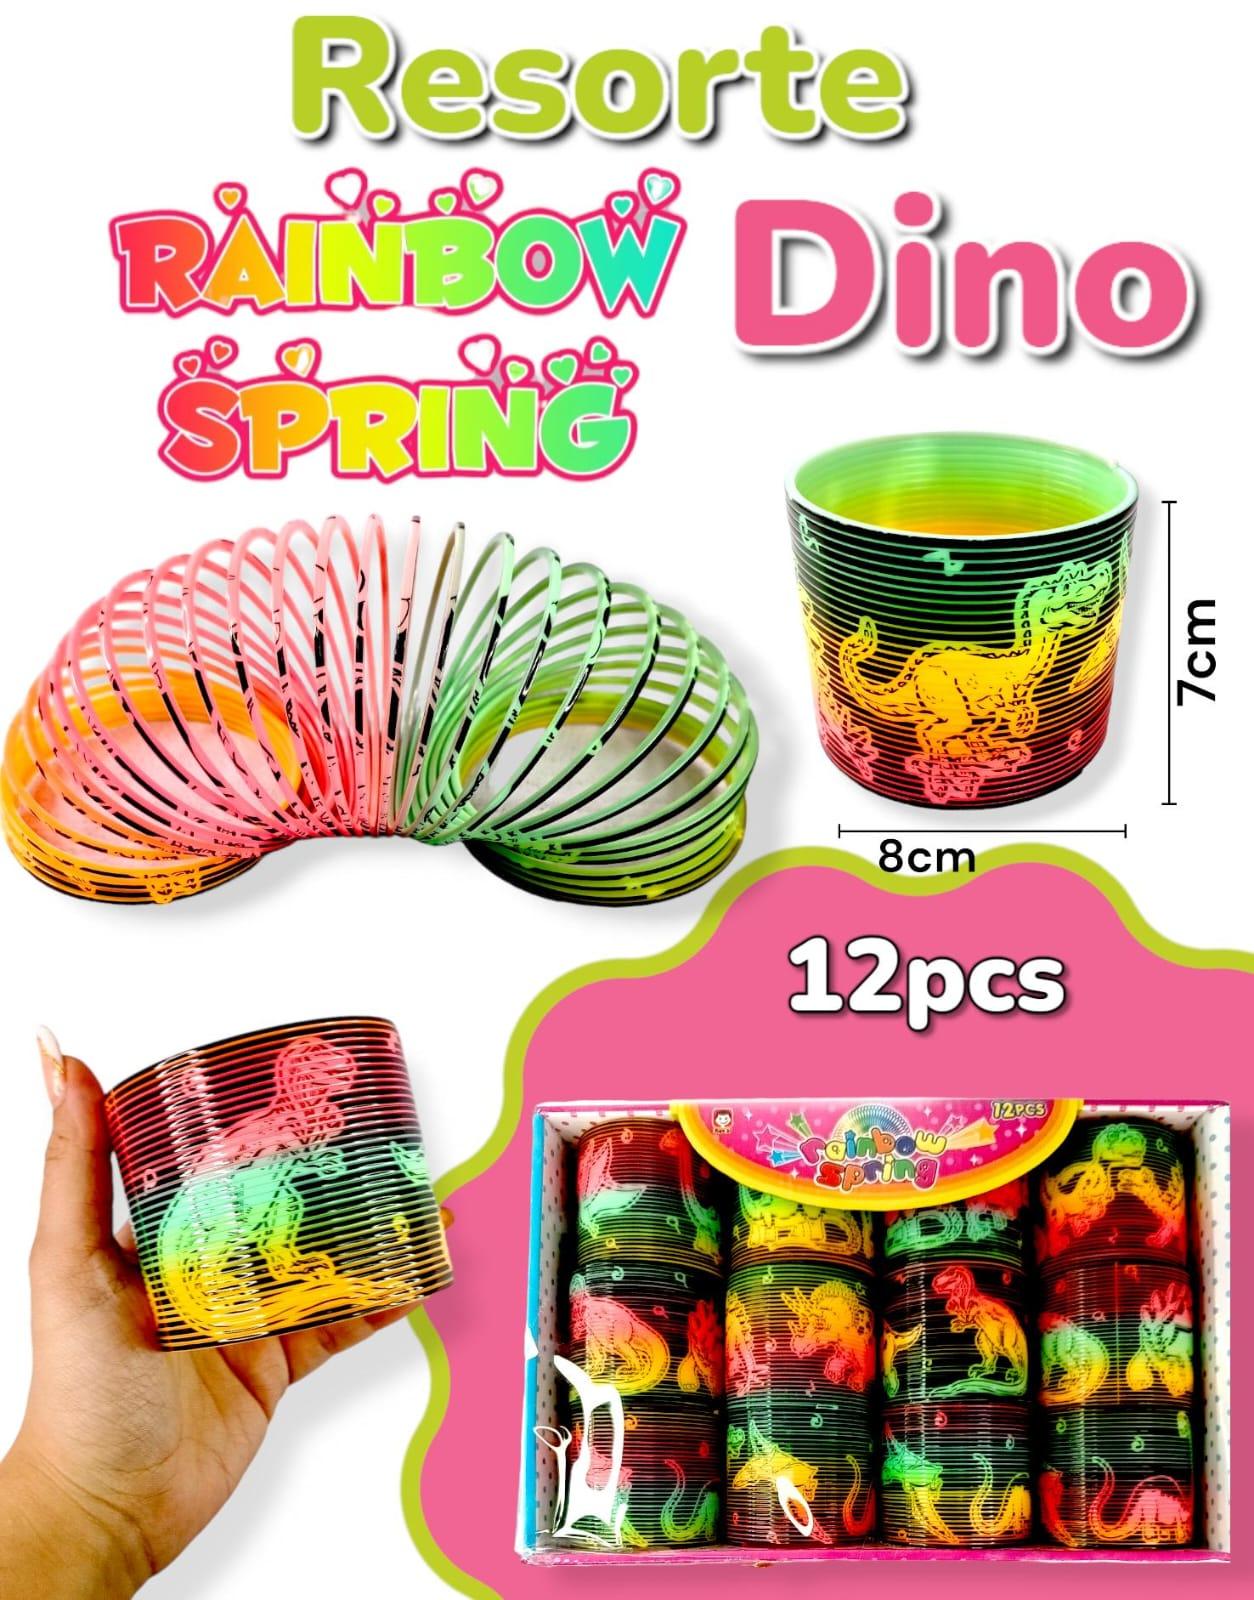 Resorte Rainbow Spring DINO 7cm